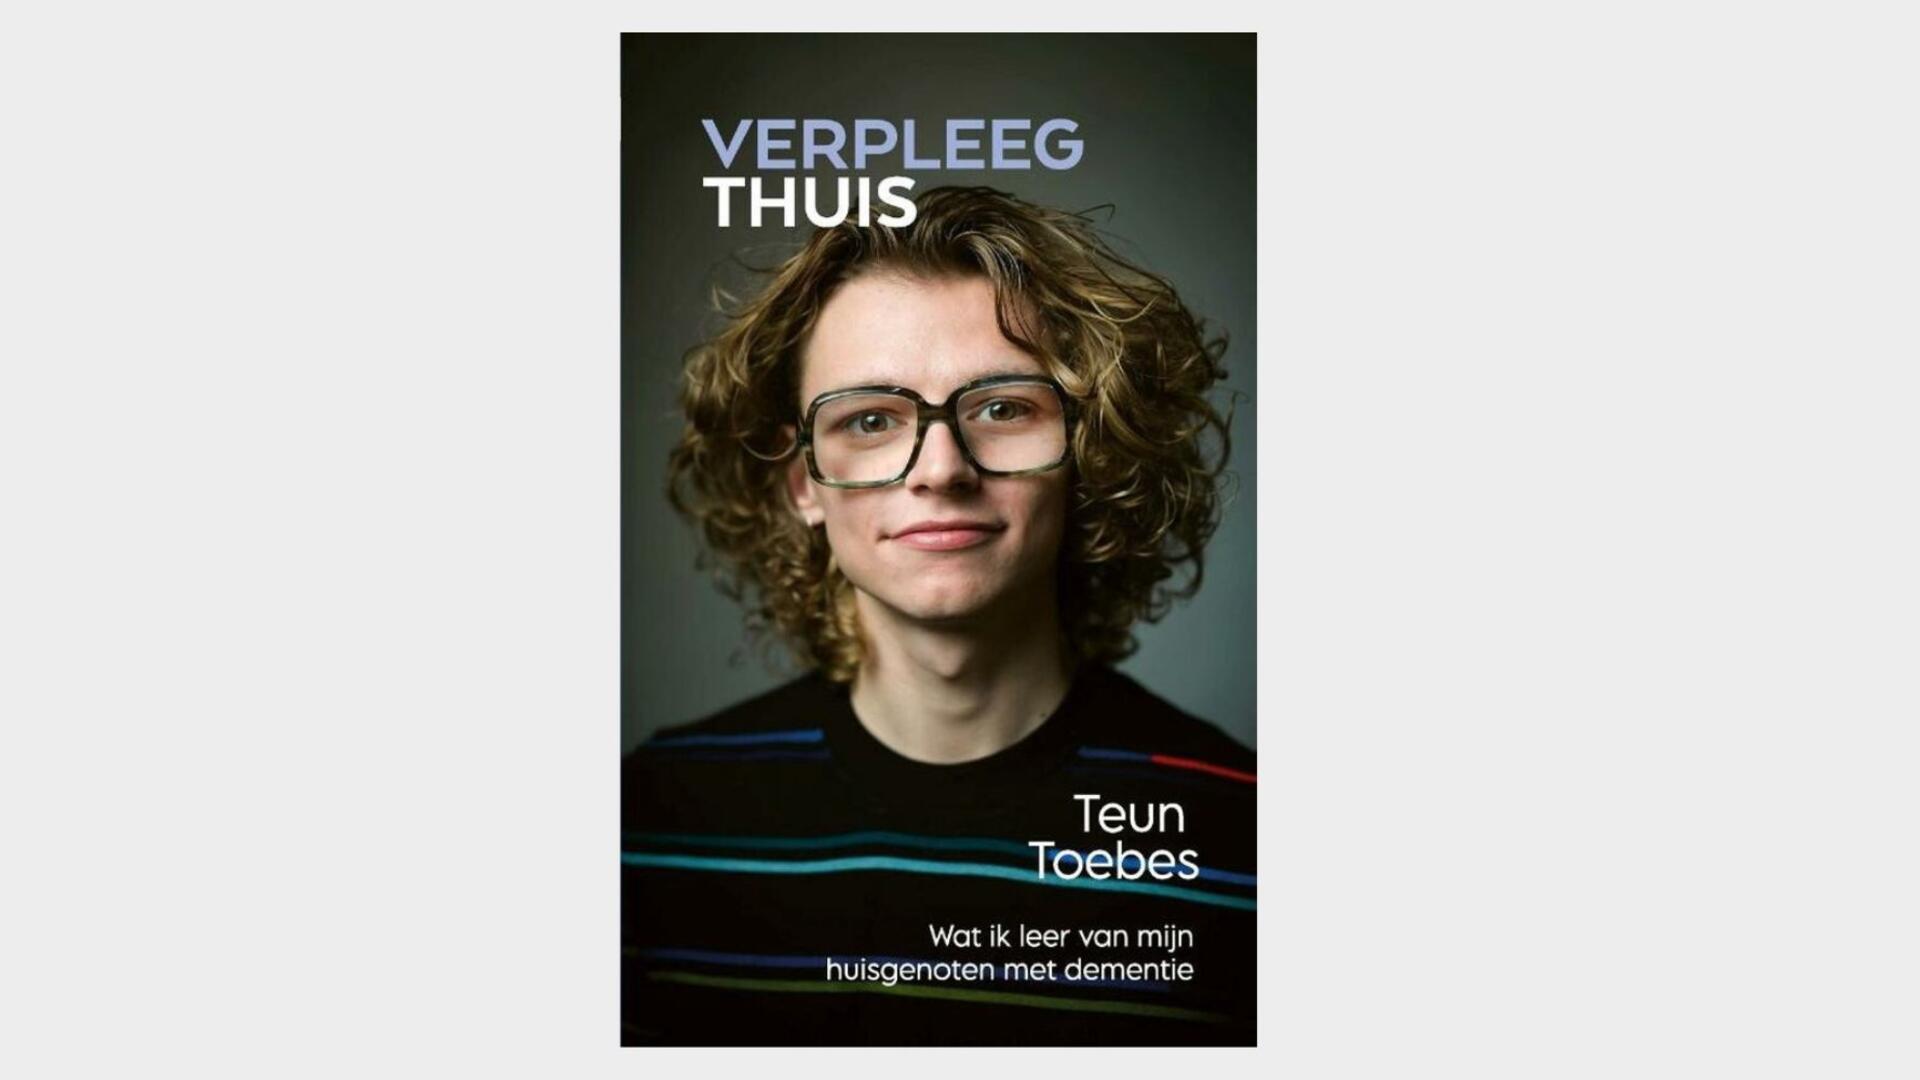 Cover van het boek Verpleegthuis, met een portretfoto van Teun Toebes